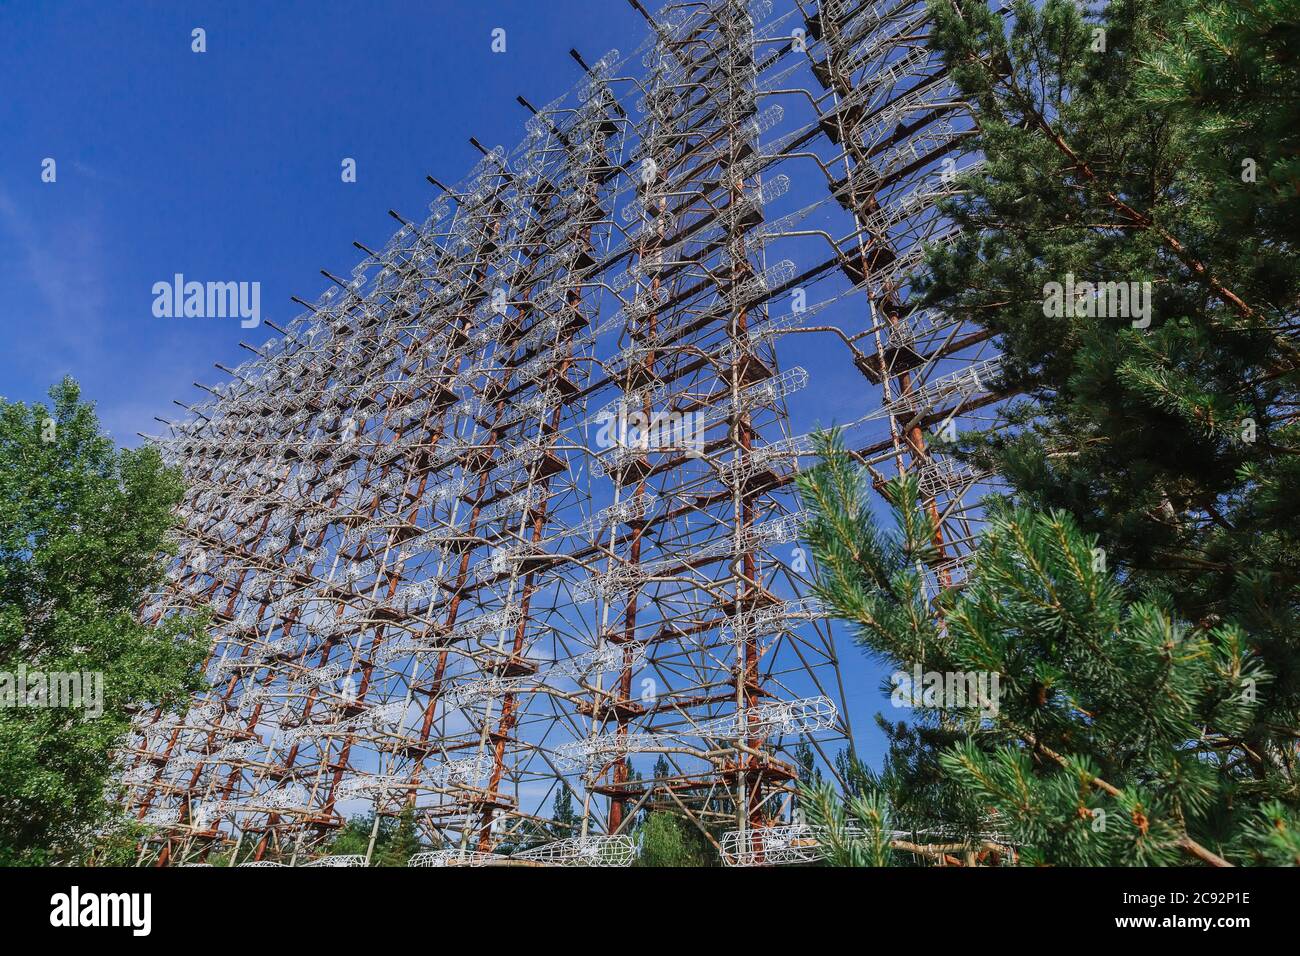 Ehemaliges militärisches Duga-Radarsystem in der Nähe der Geisterstadt Pripyat in der Tschernobyl-Ausschlusszone, Ukraine Stockfoto